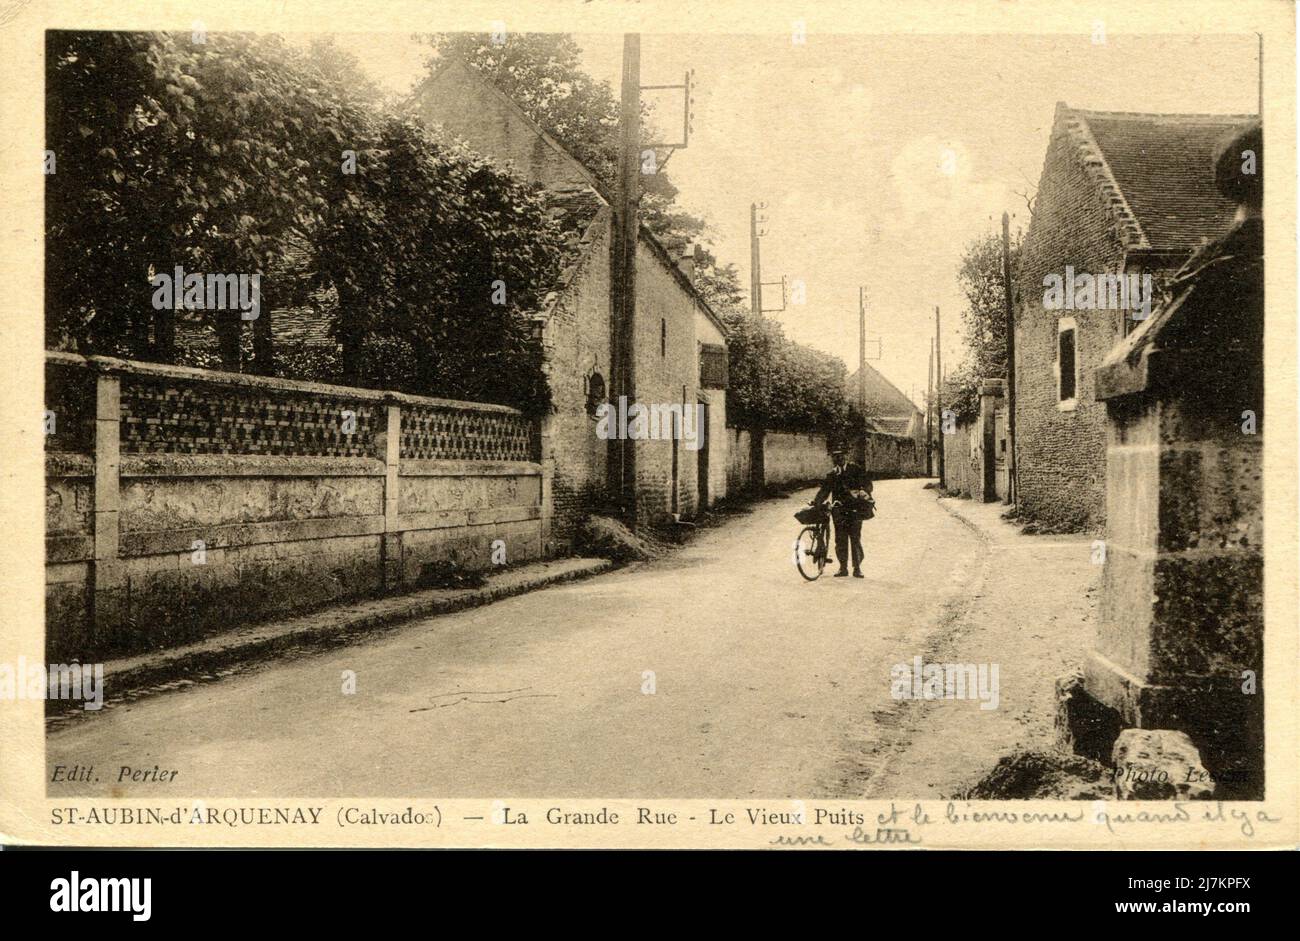 Saint-Aubin-d'Arquenay Dipartimento: 14 - Calvados Regione: Normandia (ex bassa Normandia) cartolina d'epoca, fine 19th - inizio 20th secolo Foto Stock